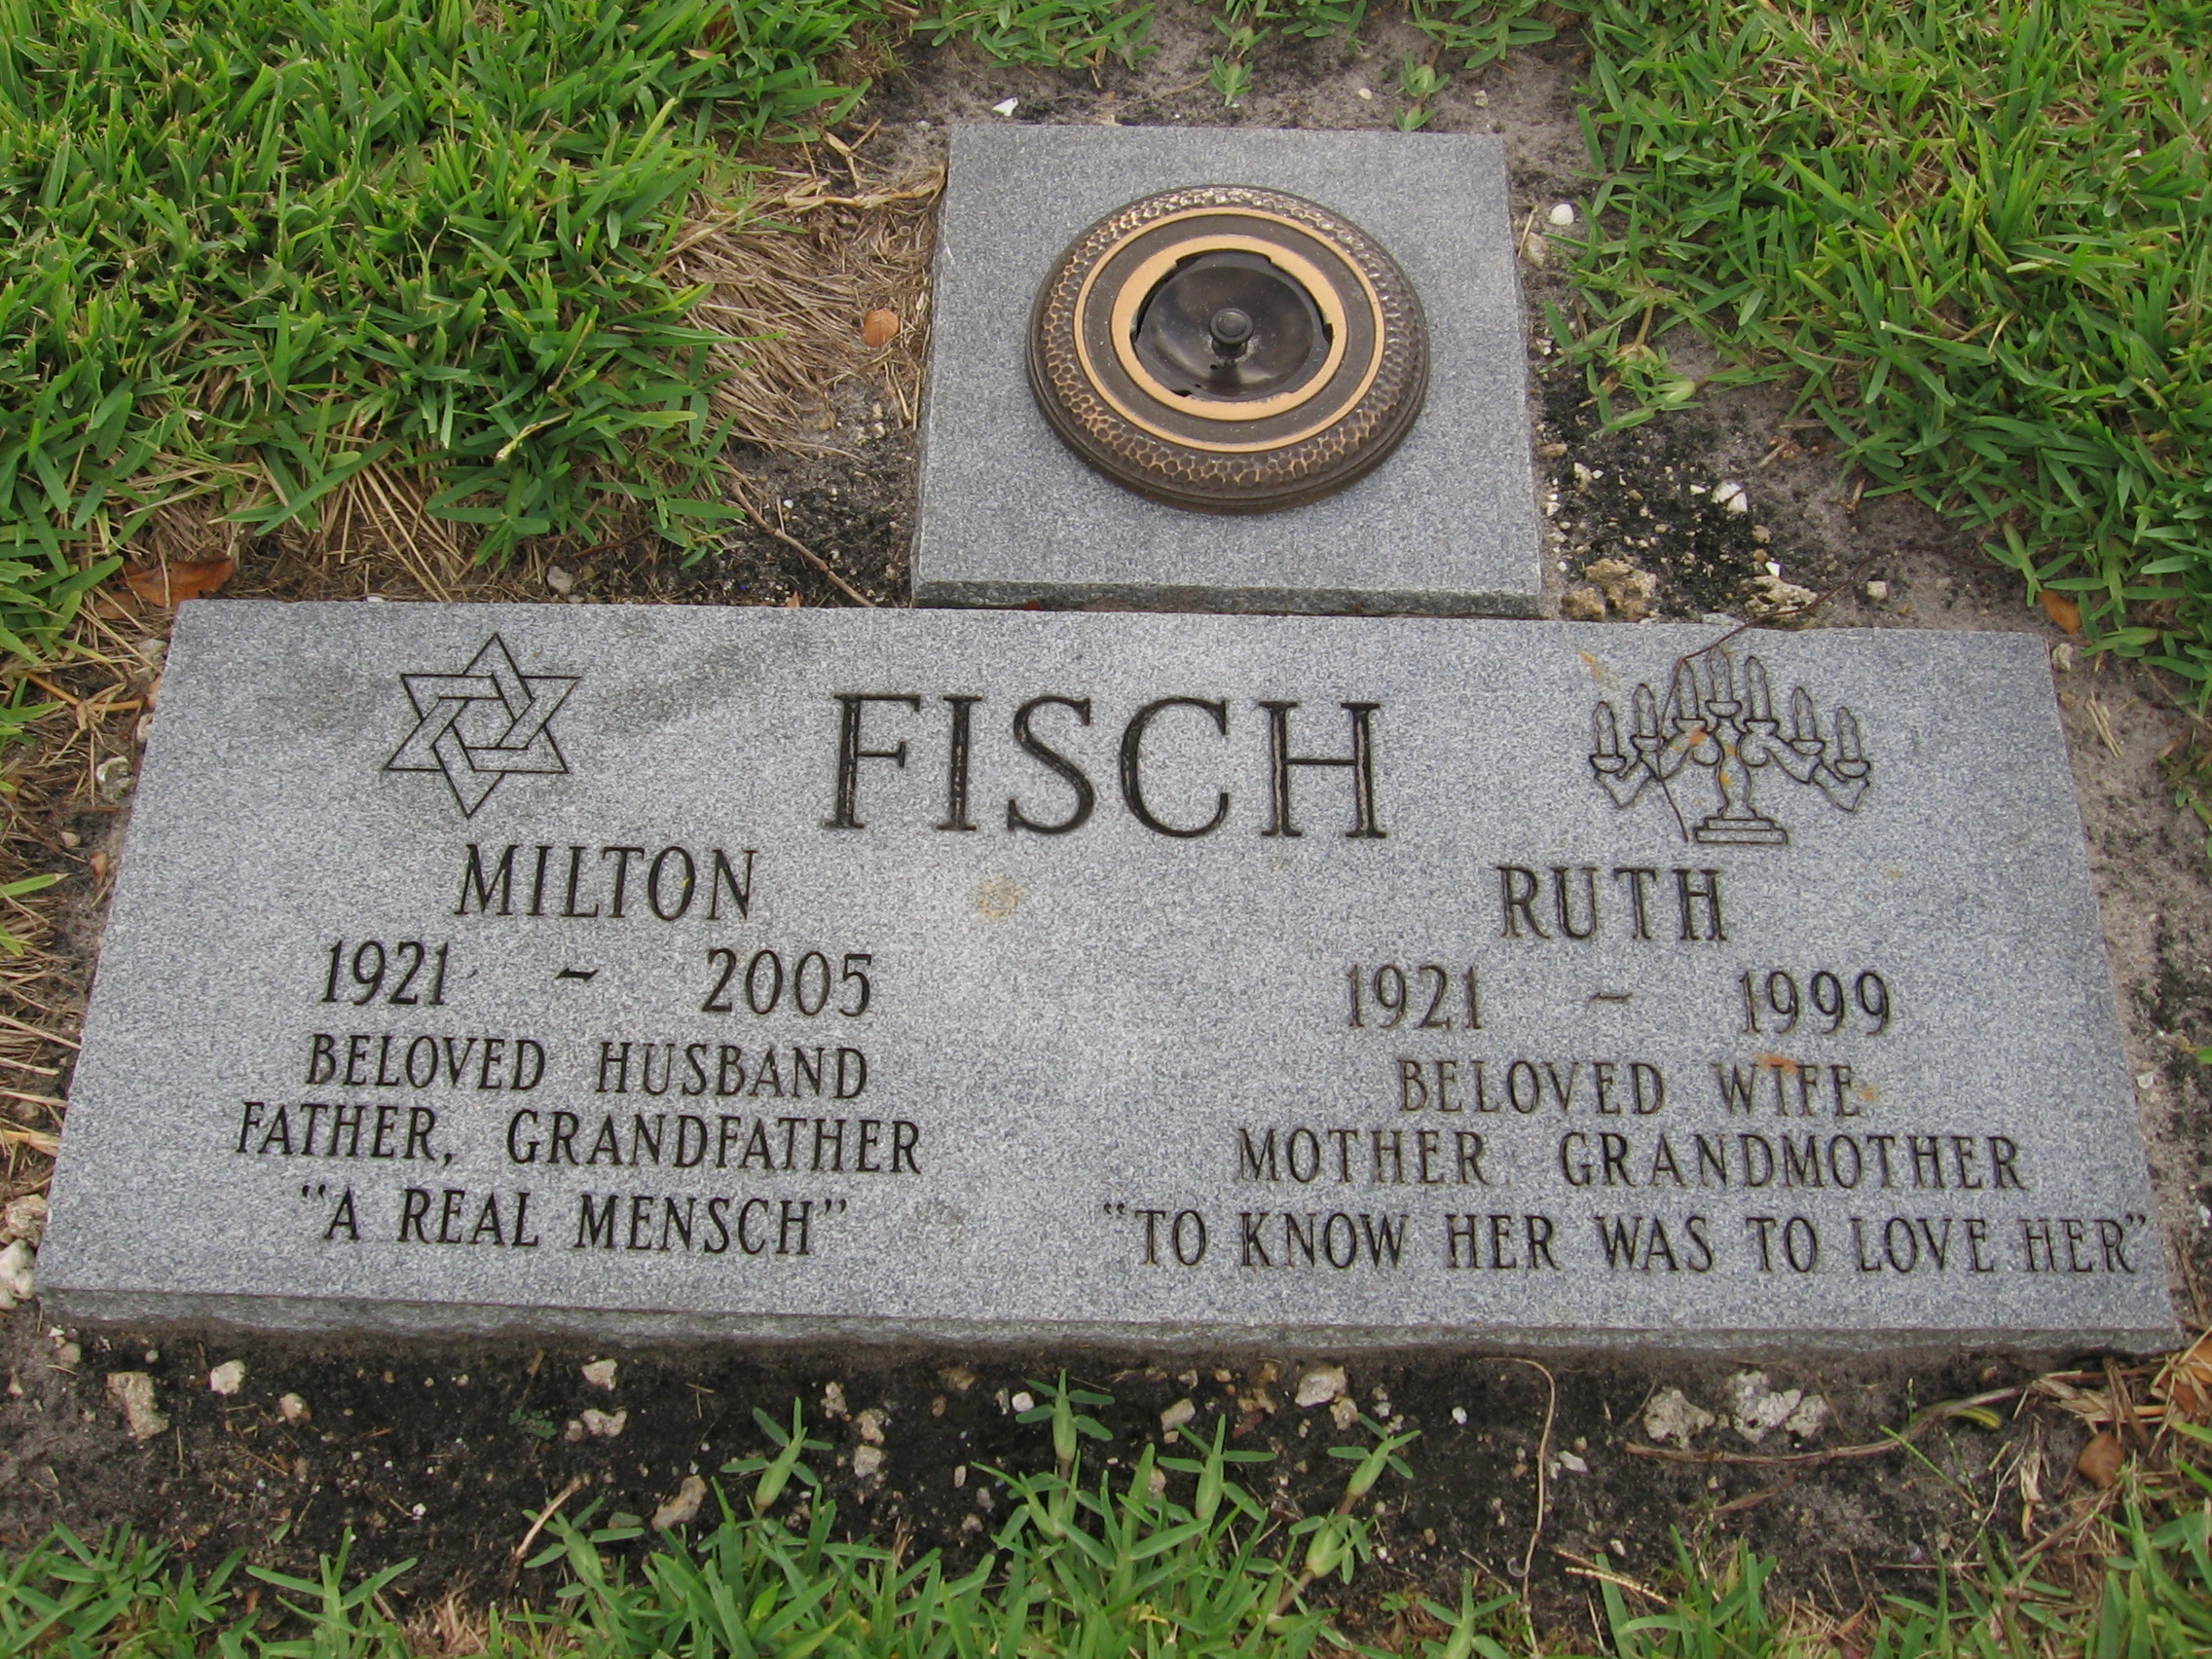 Milton Fisch